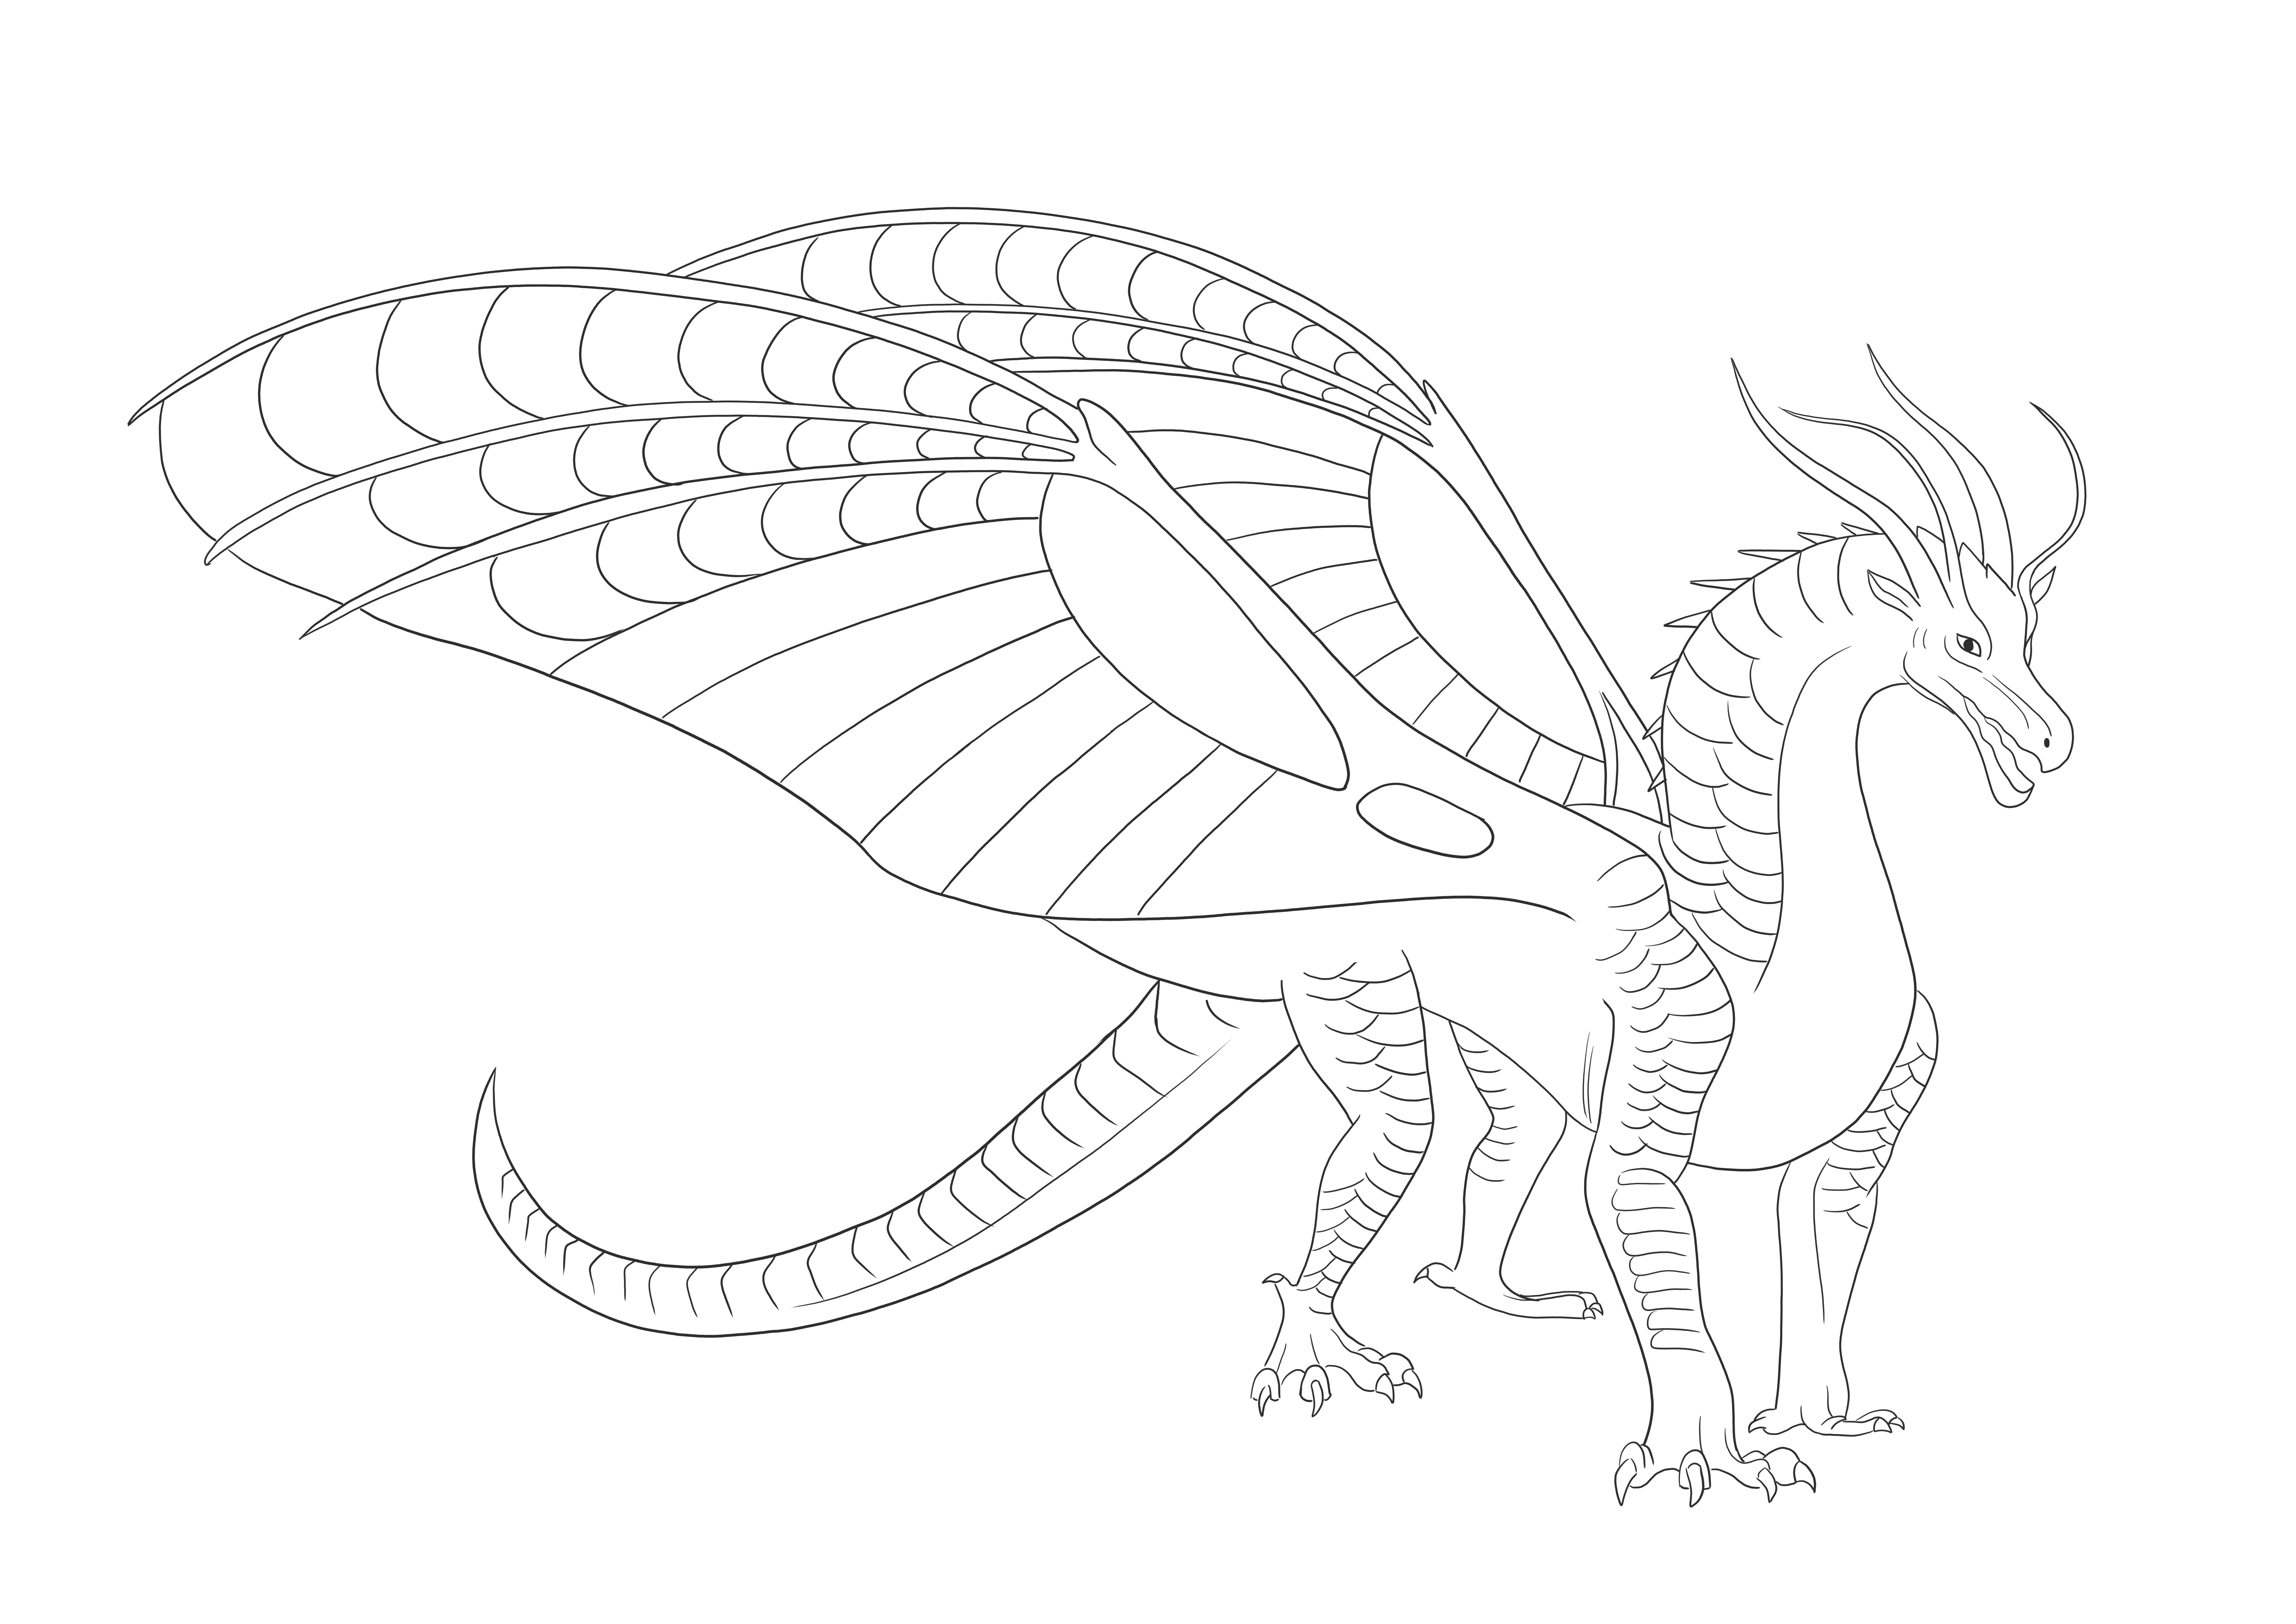 Silkwing Dragon dalle ali di fuoco gratis per stampare e colorare l'immagine